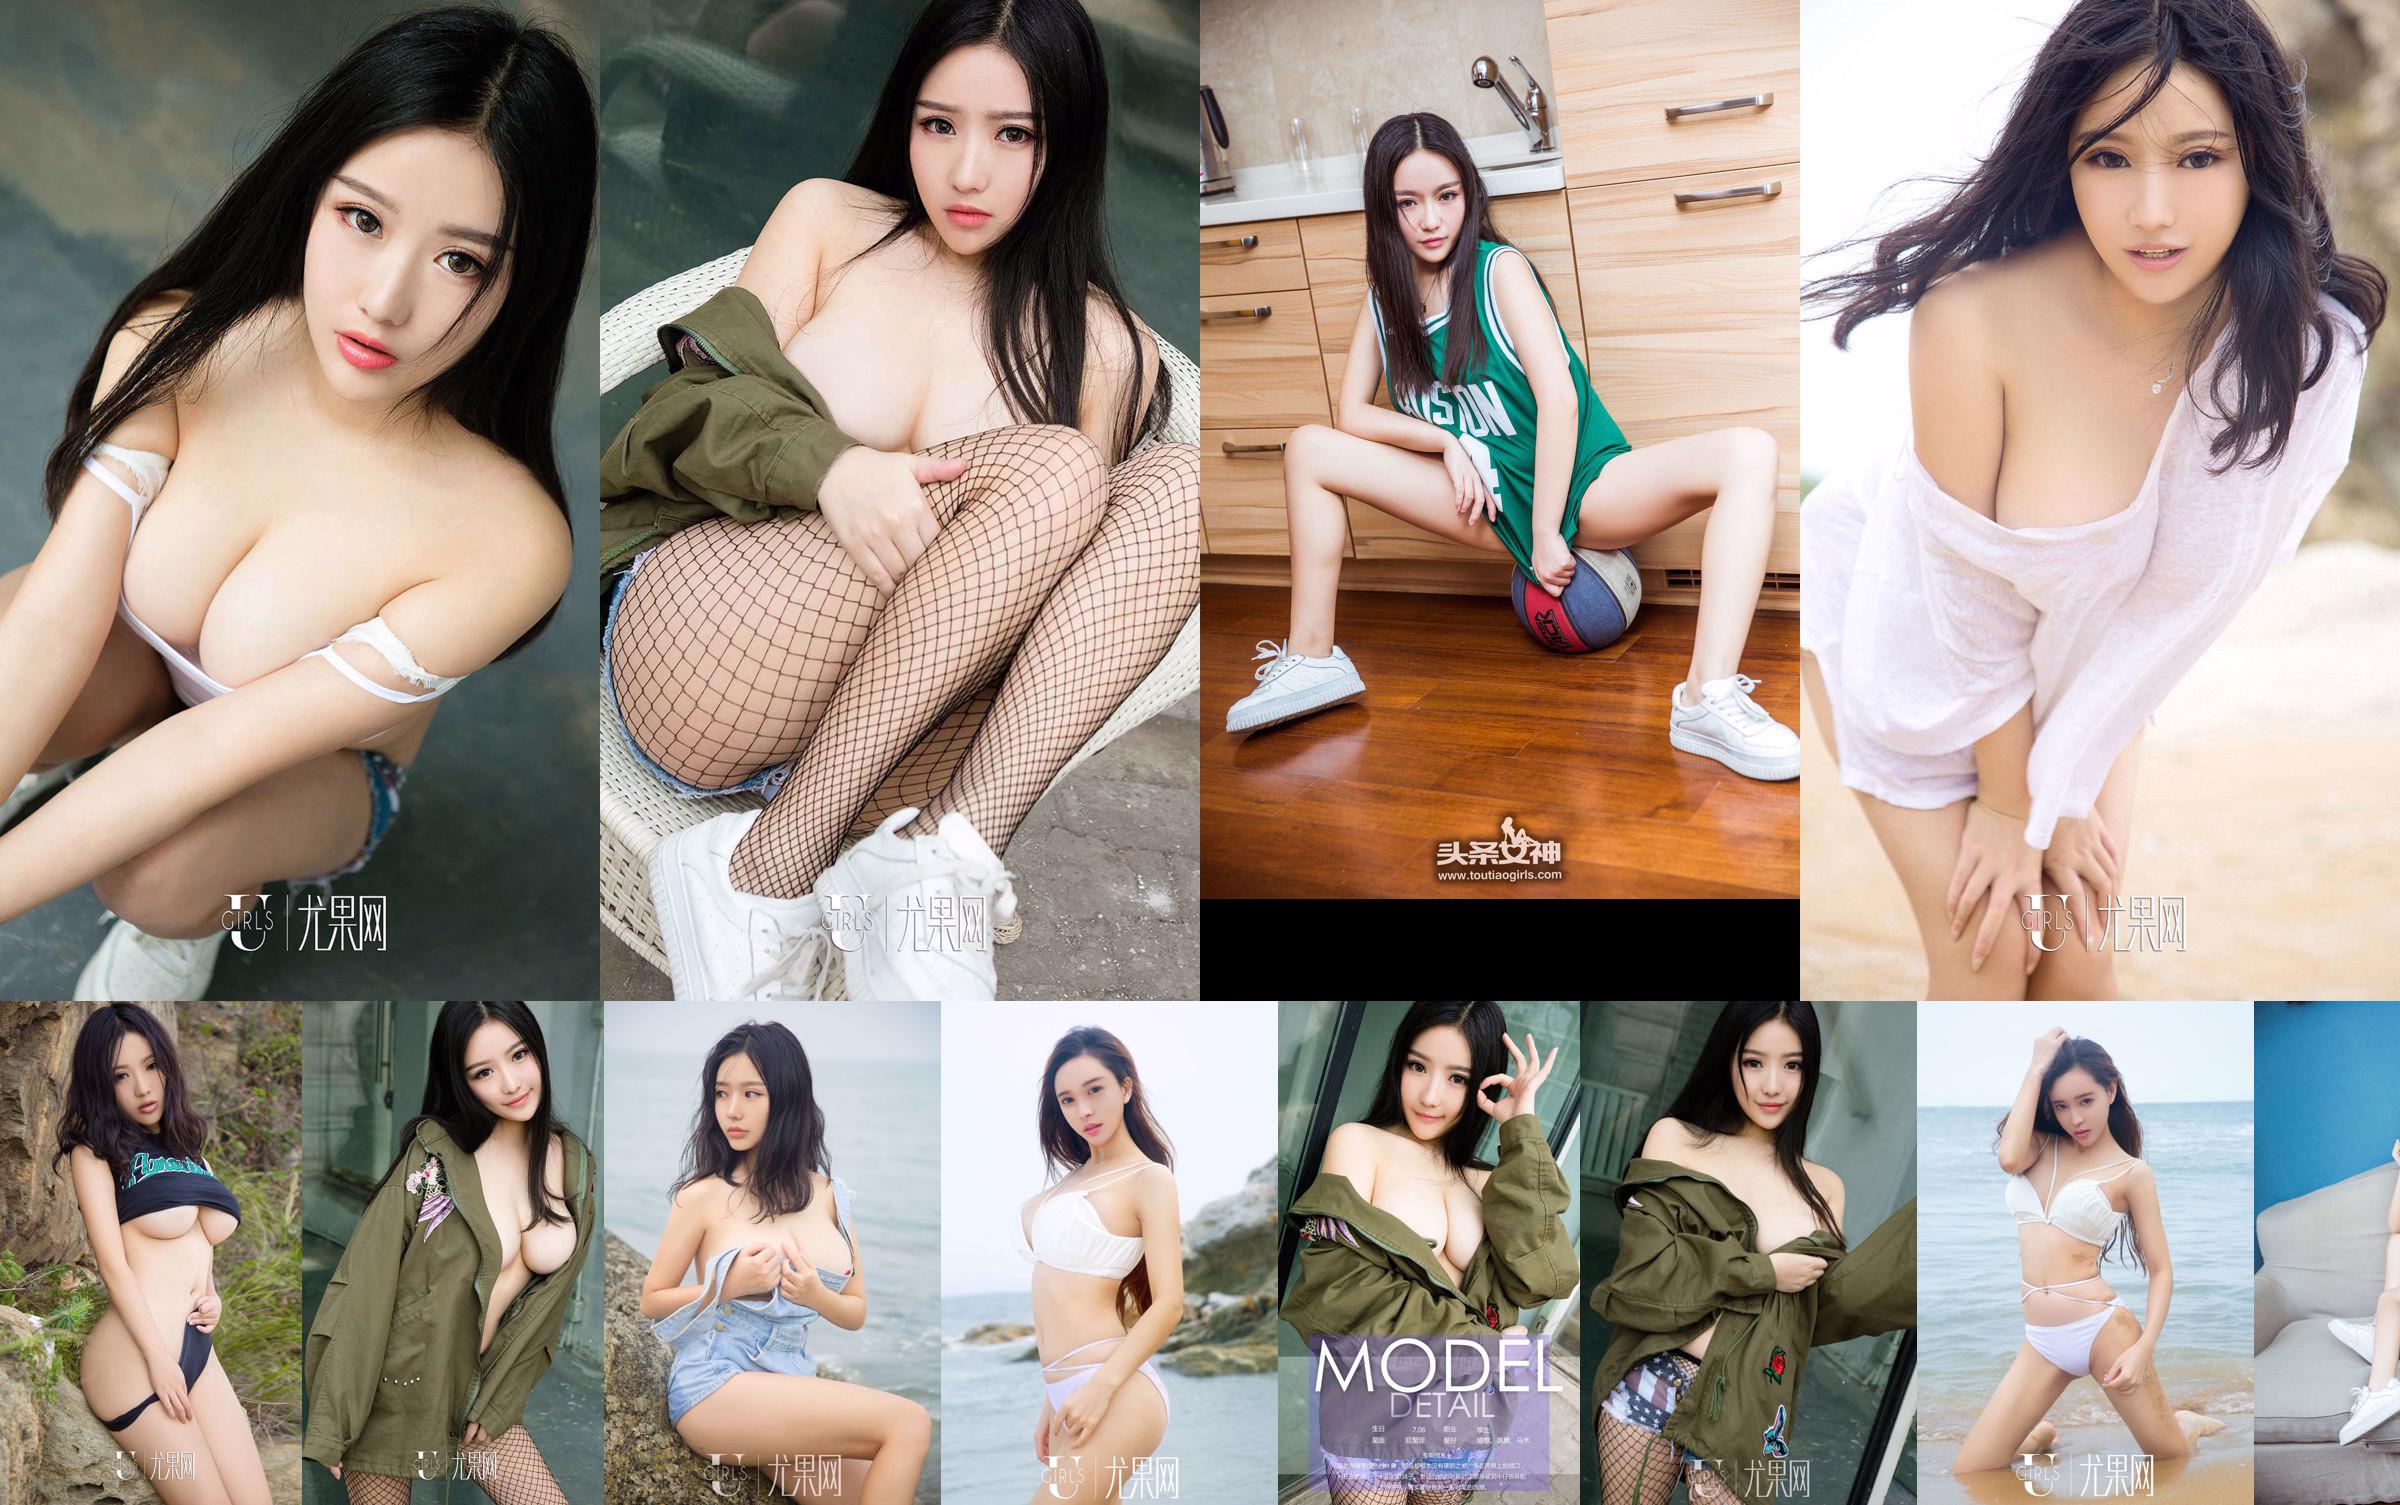 Ni Yeteng "Cô gái mềm mại trong quân phục" [Youguoquan] No.714 No.c62b81 Trang 1